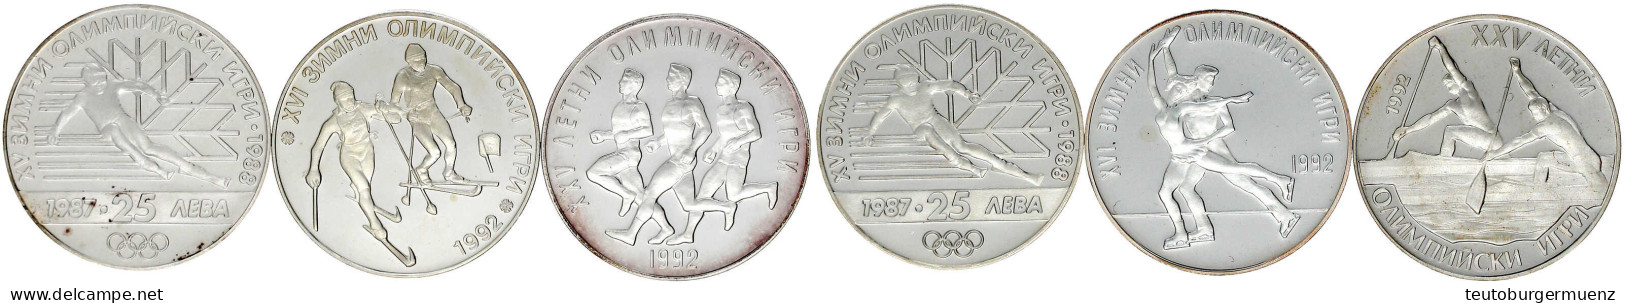 6 X 25 Leva Silbergedenkmünzen Zu Olympiaden Aus 1987 Bis 1990. 2 X Abfahrtsläufer 1987 (KM 160), Zweier-Kanadier 1989 ( - Bulgarien